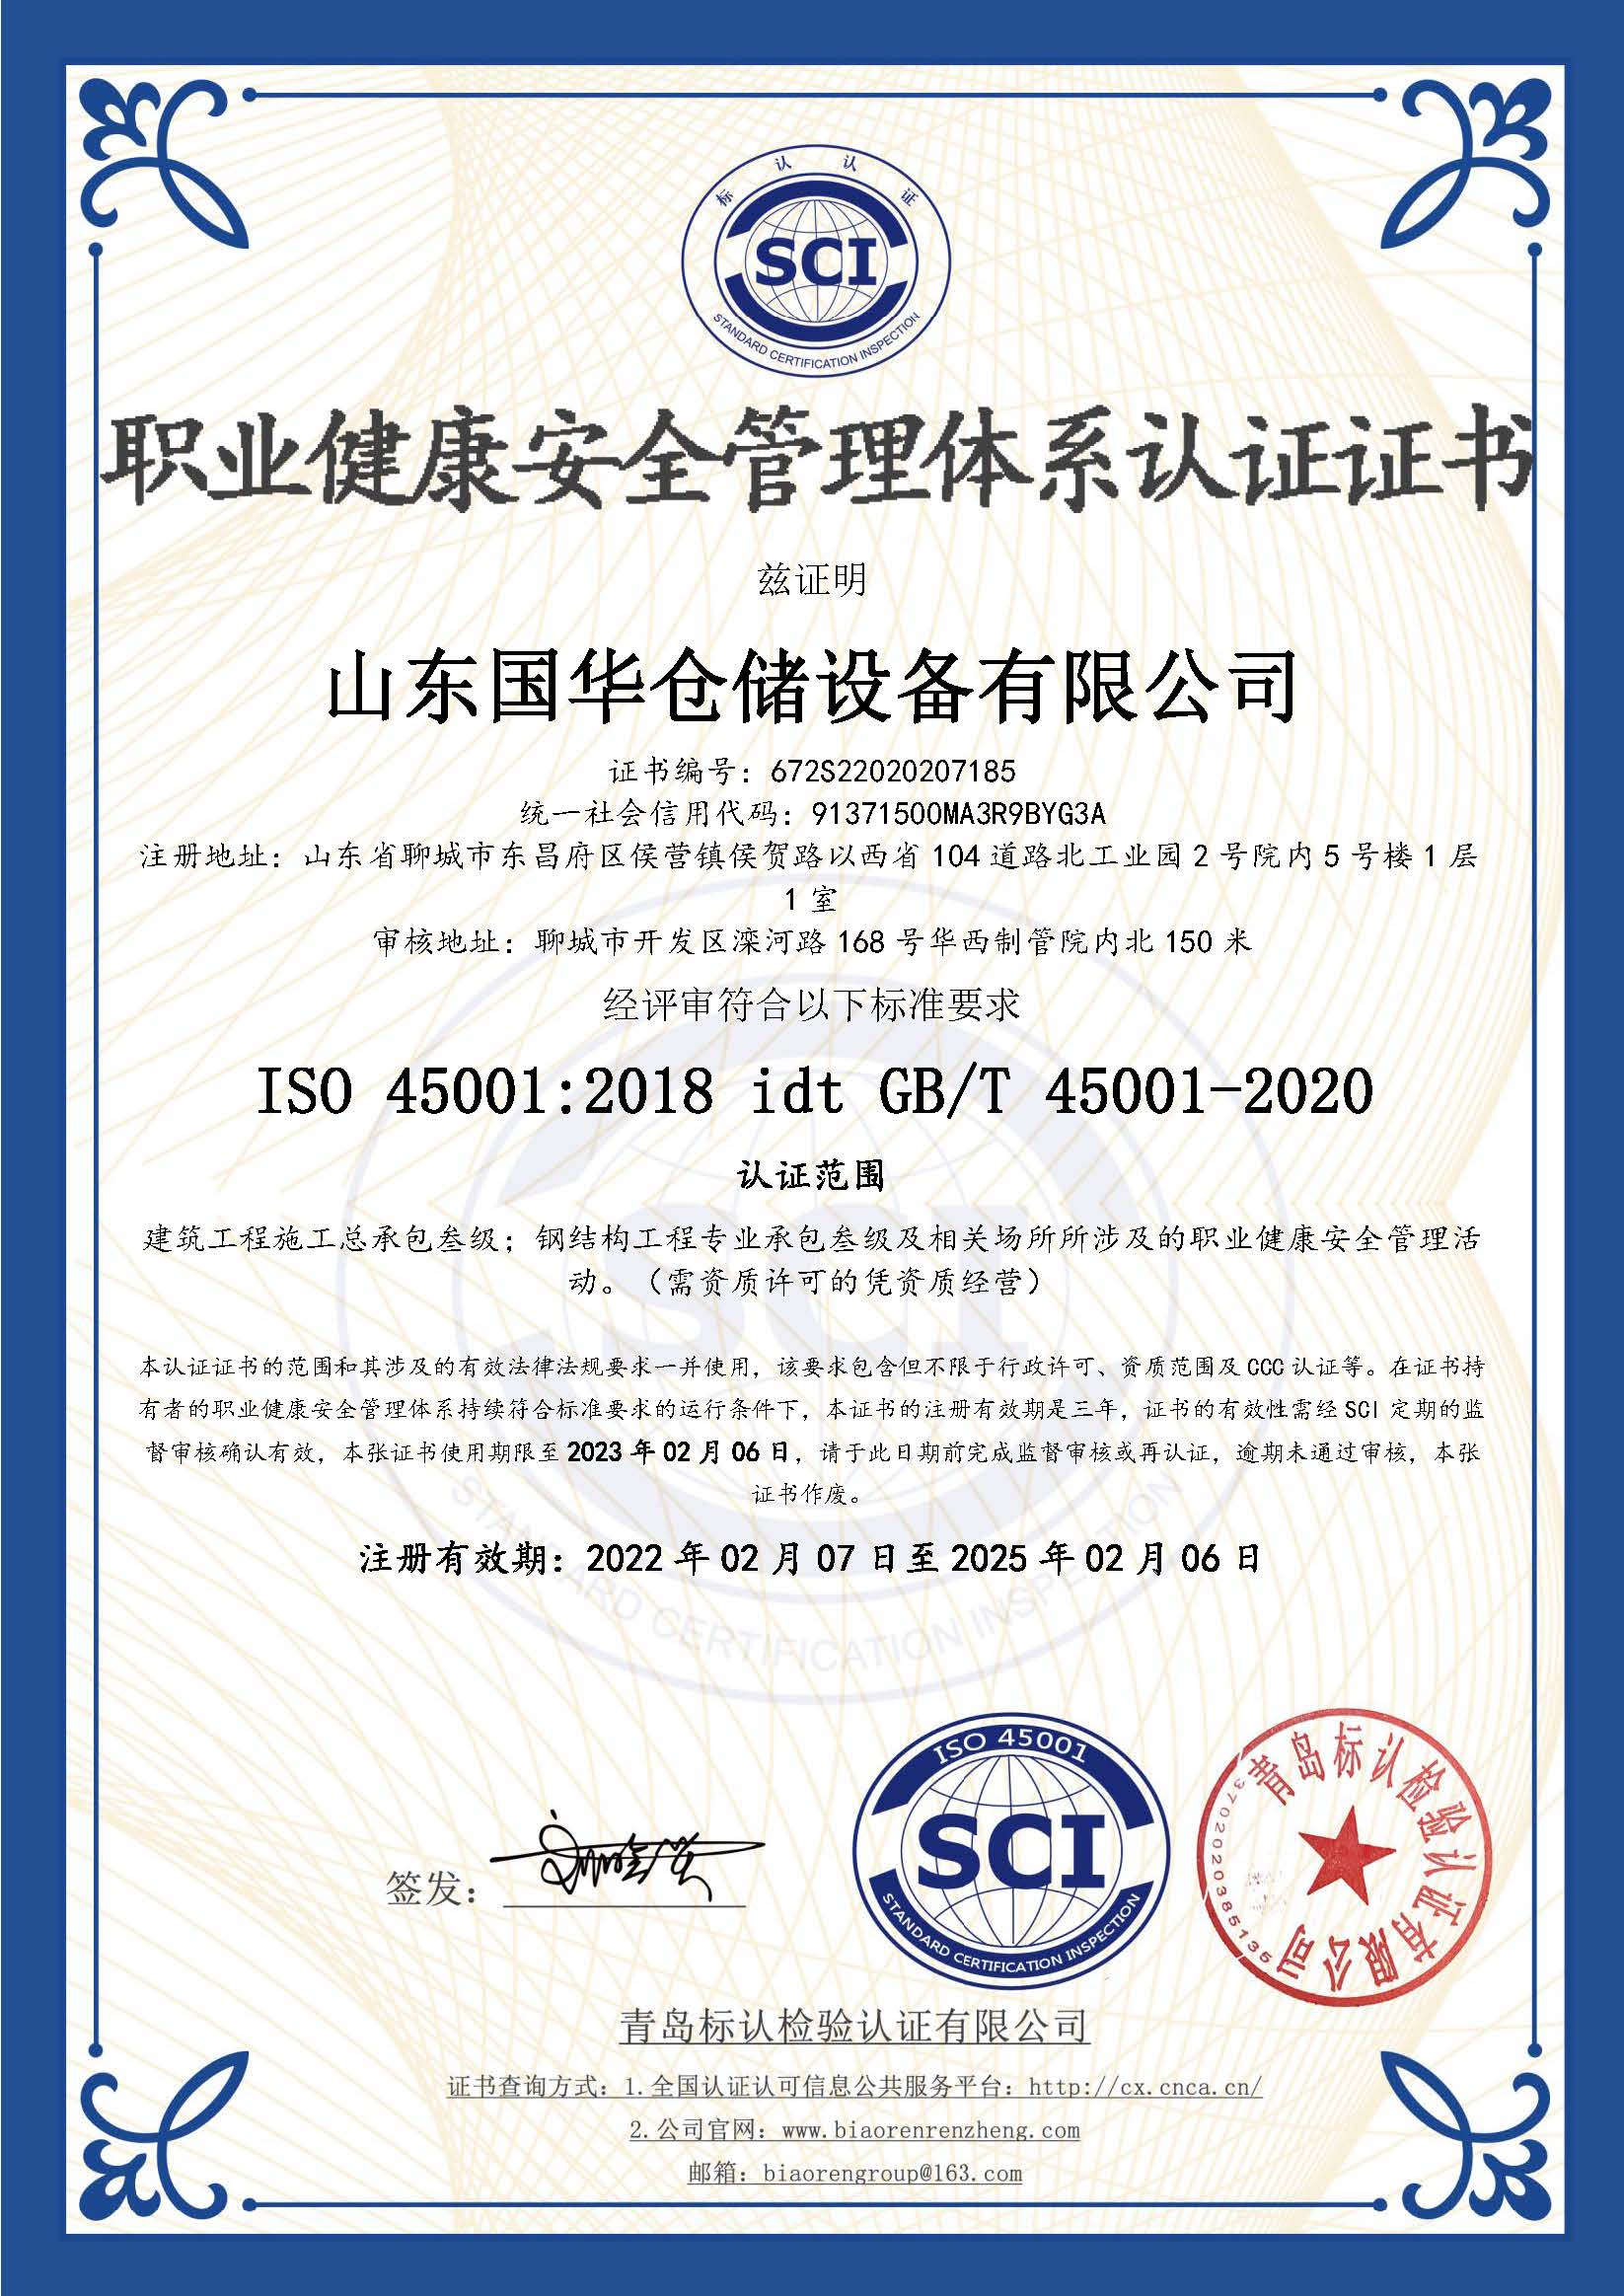 吴忠钢板仓职业健康安全管理体系认证证书